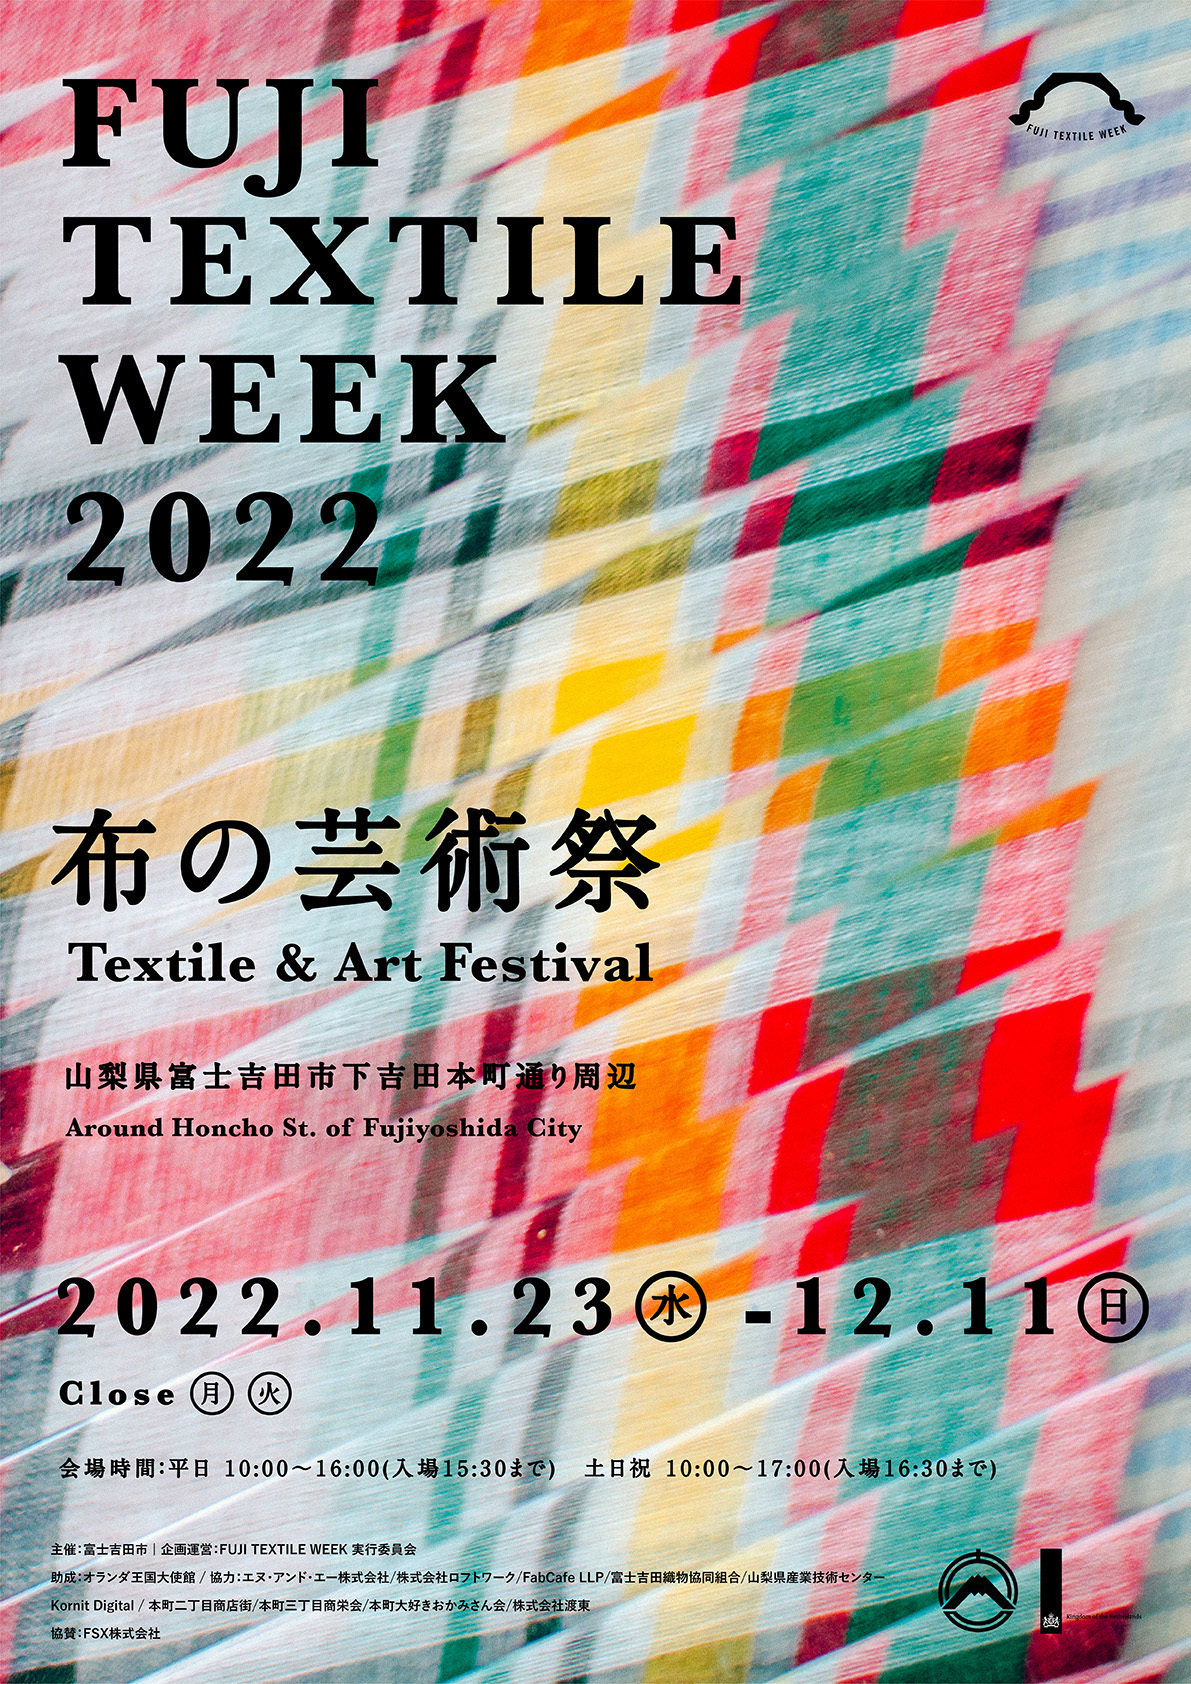 1,000年以上続く織物産地から発信する
布の芸術祭「FUJI TEXTILE WEEK 2022」に協賛